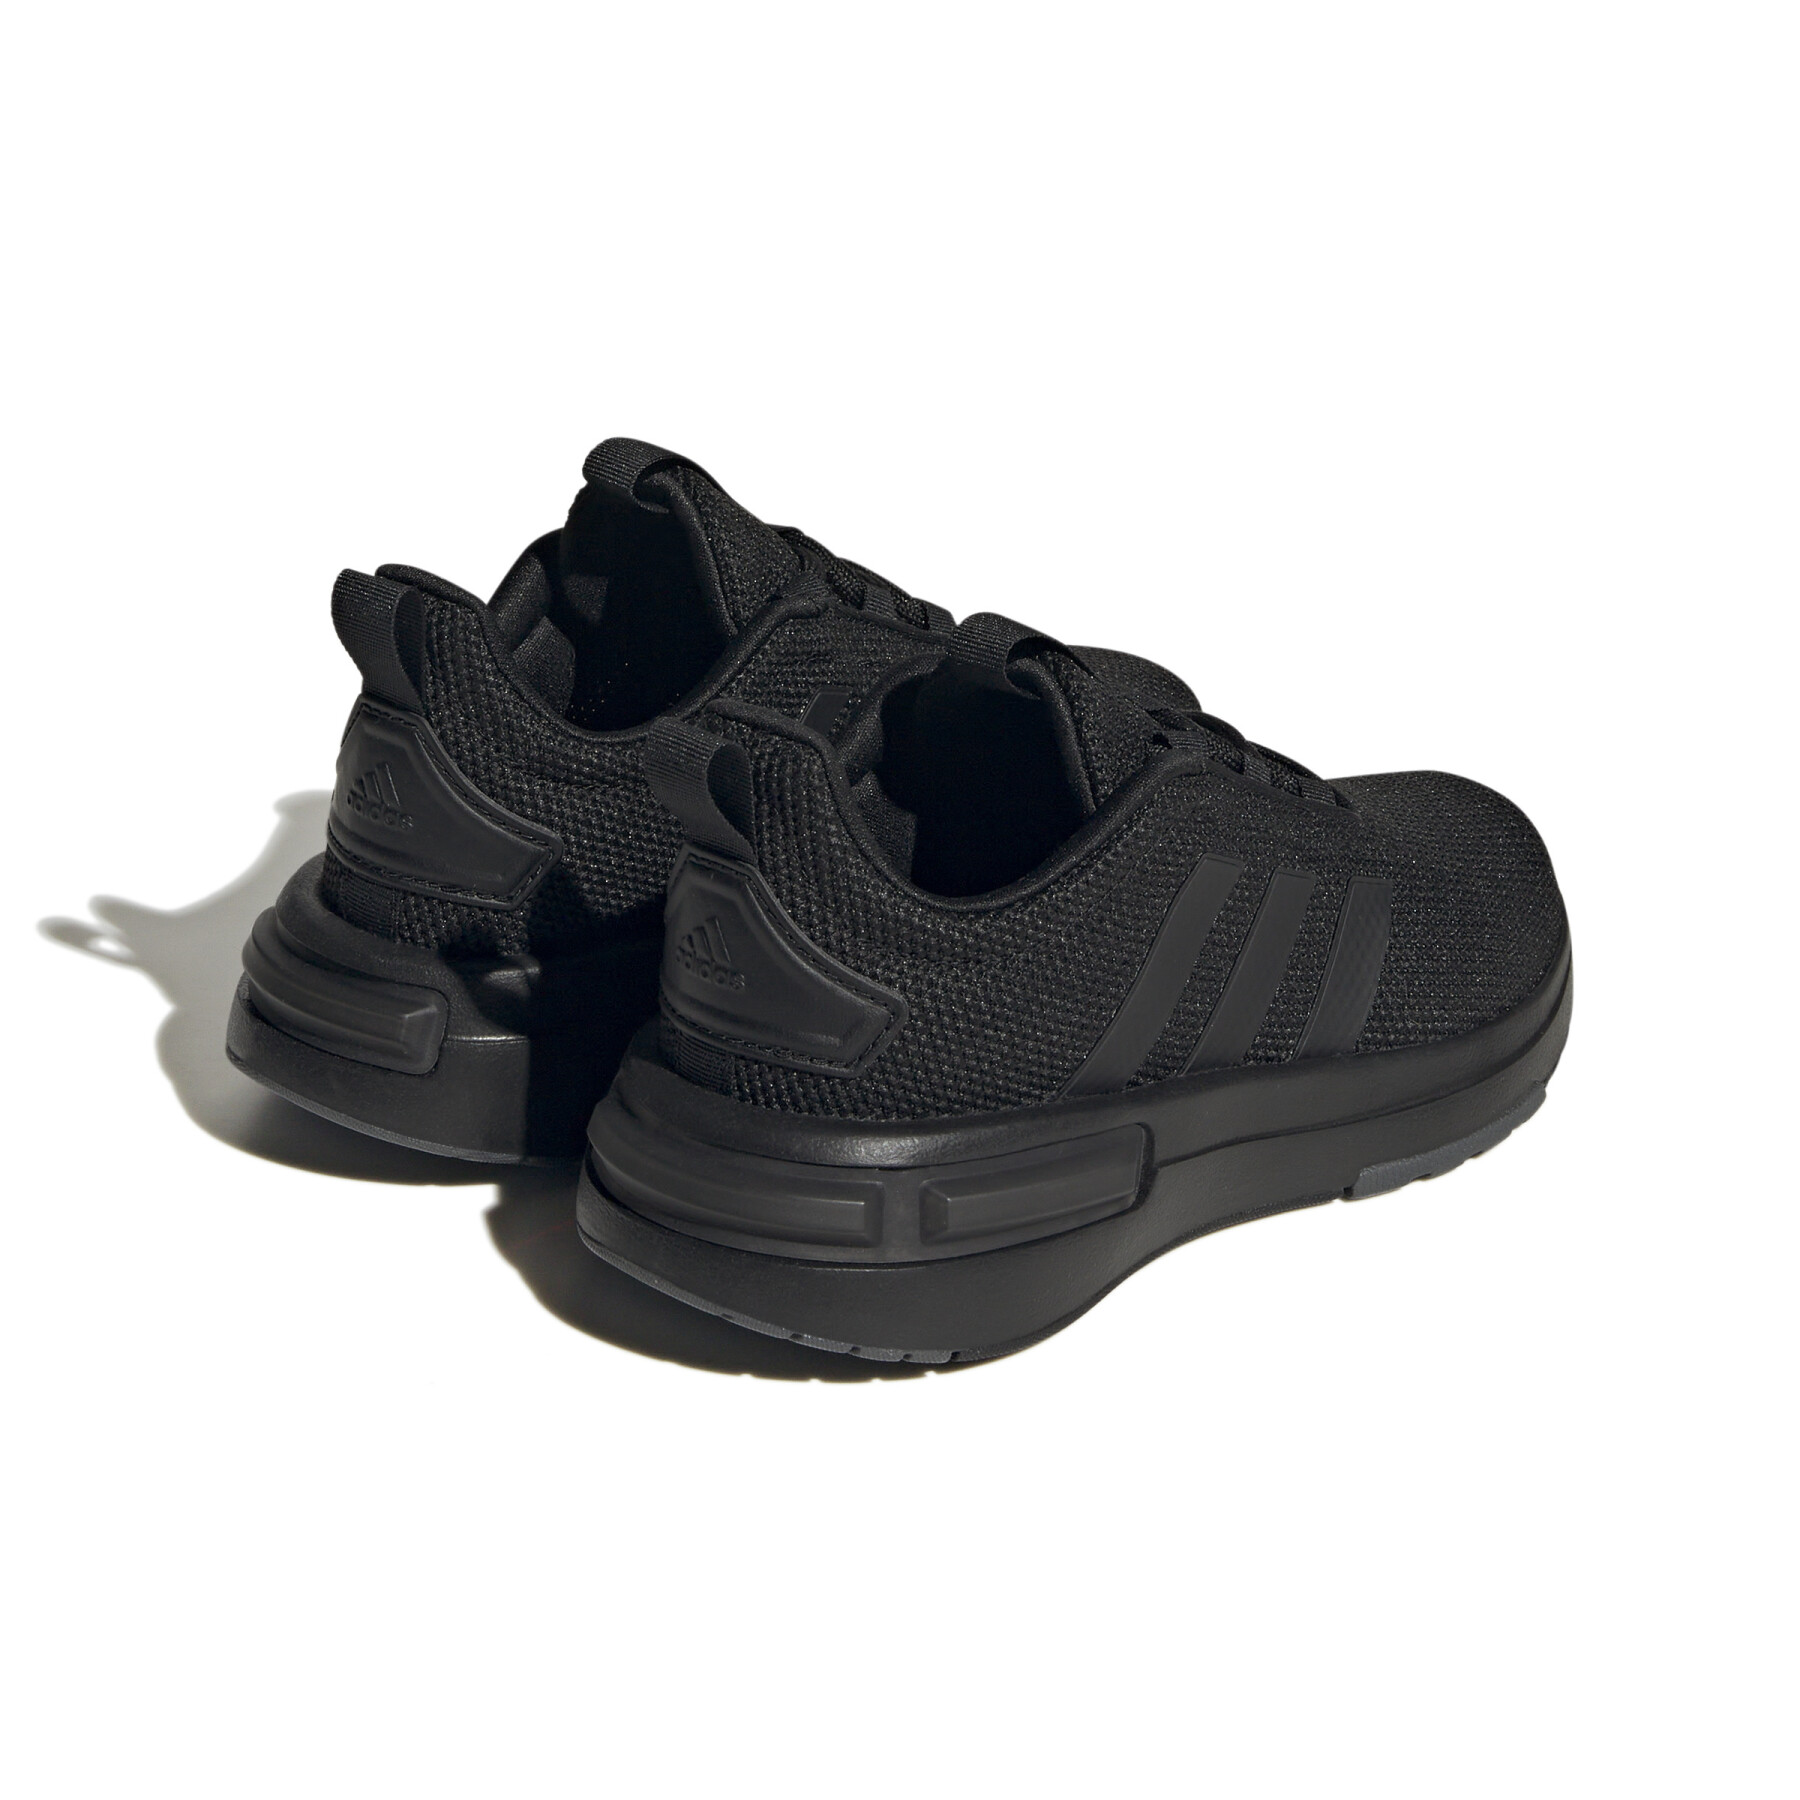 Children's sneakers adidas Racer TR23